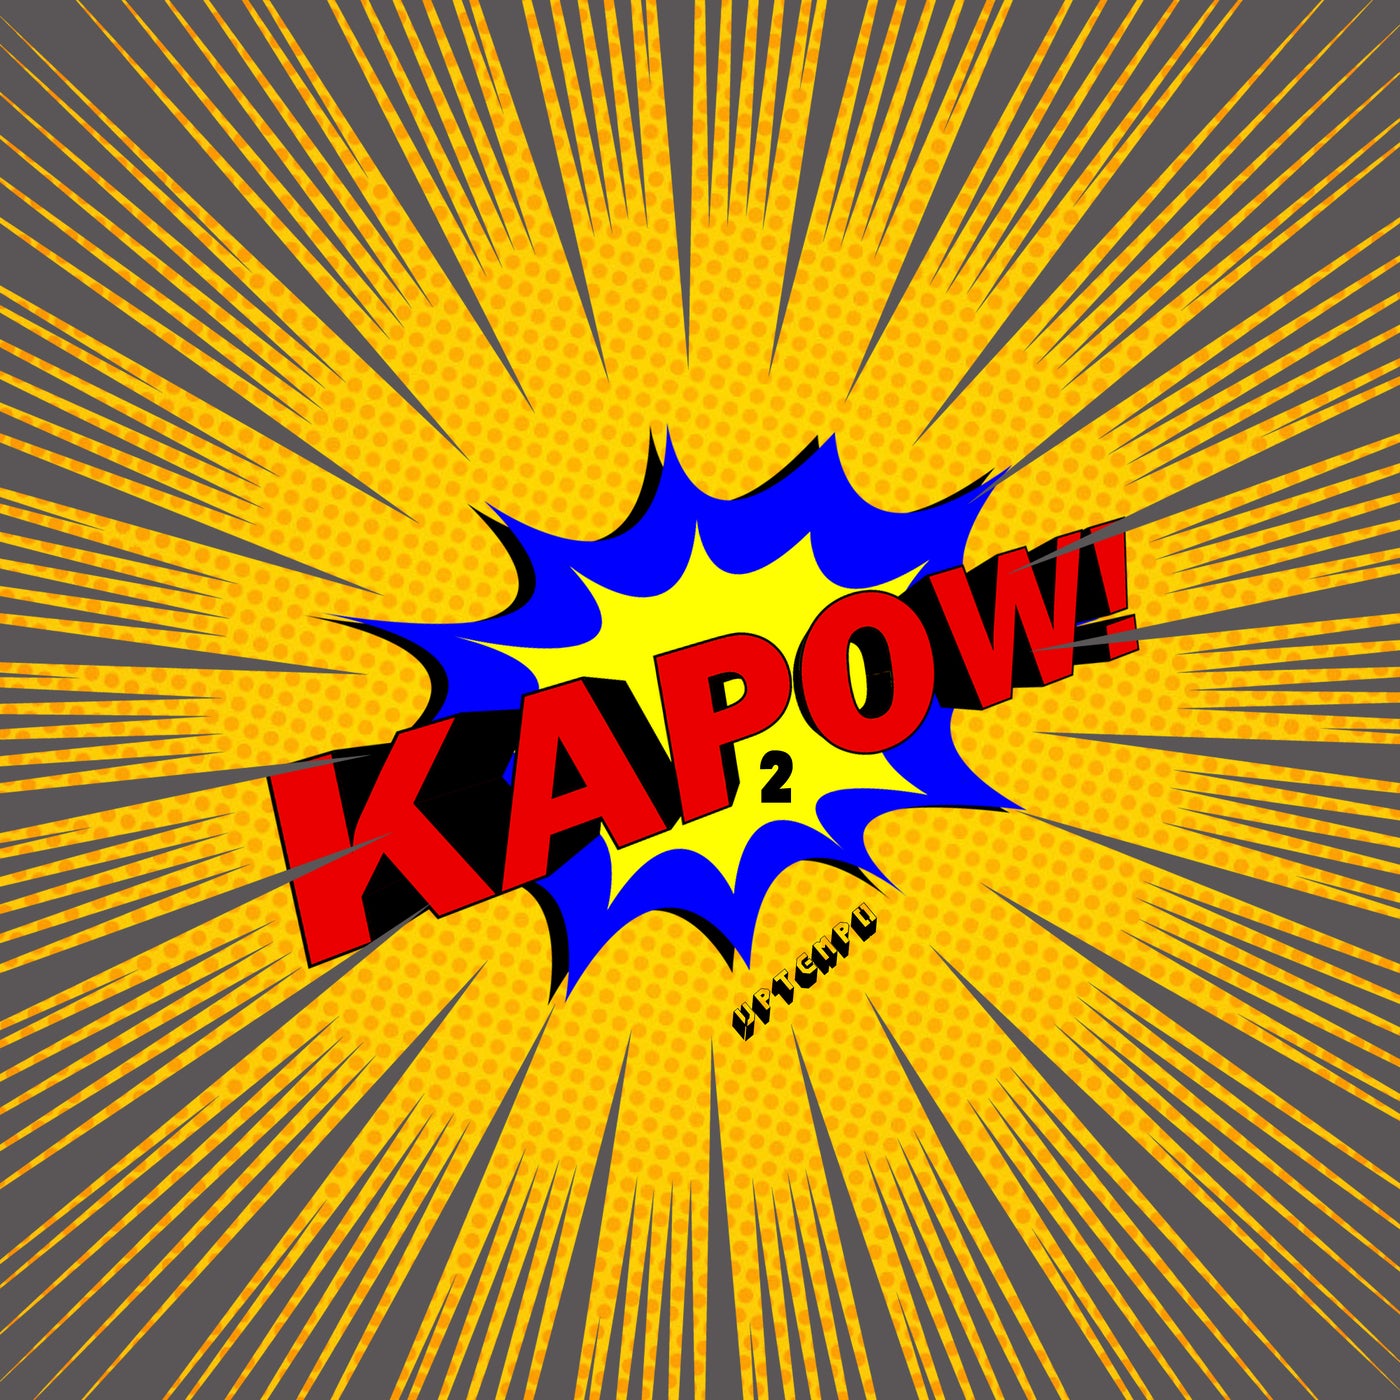 Kapow! 2